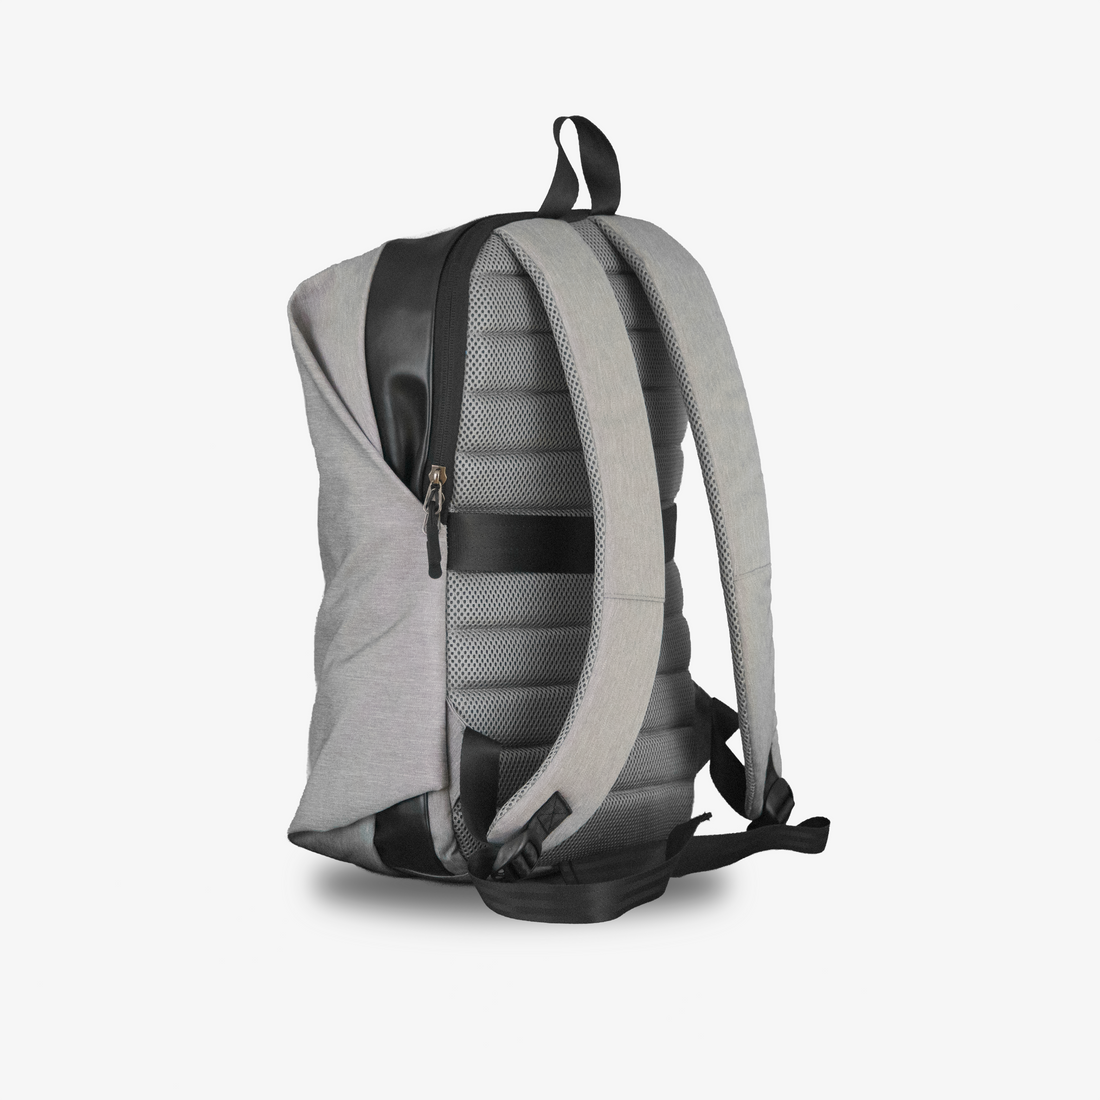 Minimalist backpack debuts at Kickstarter